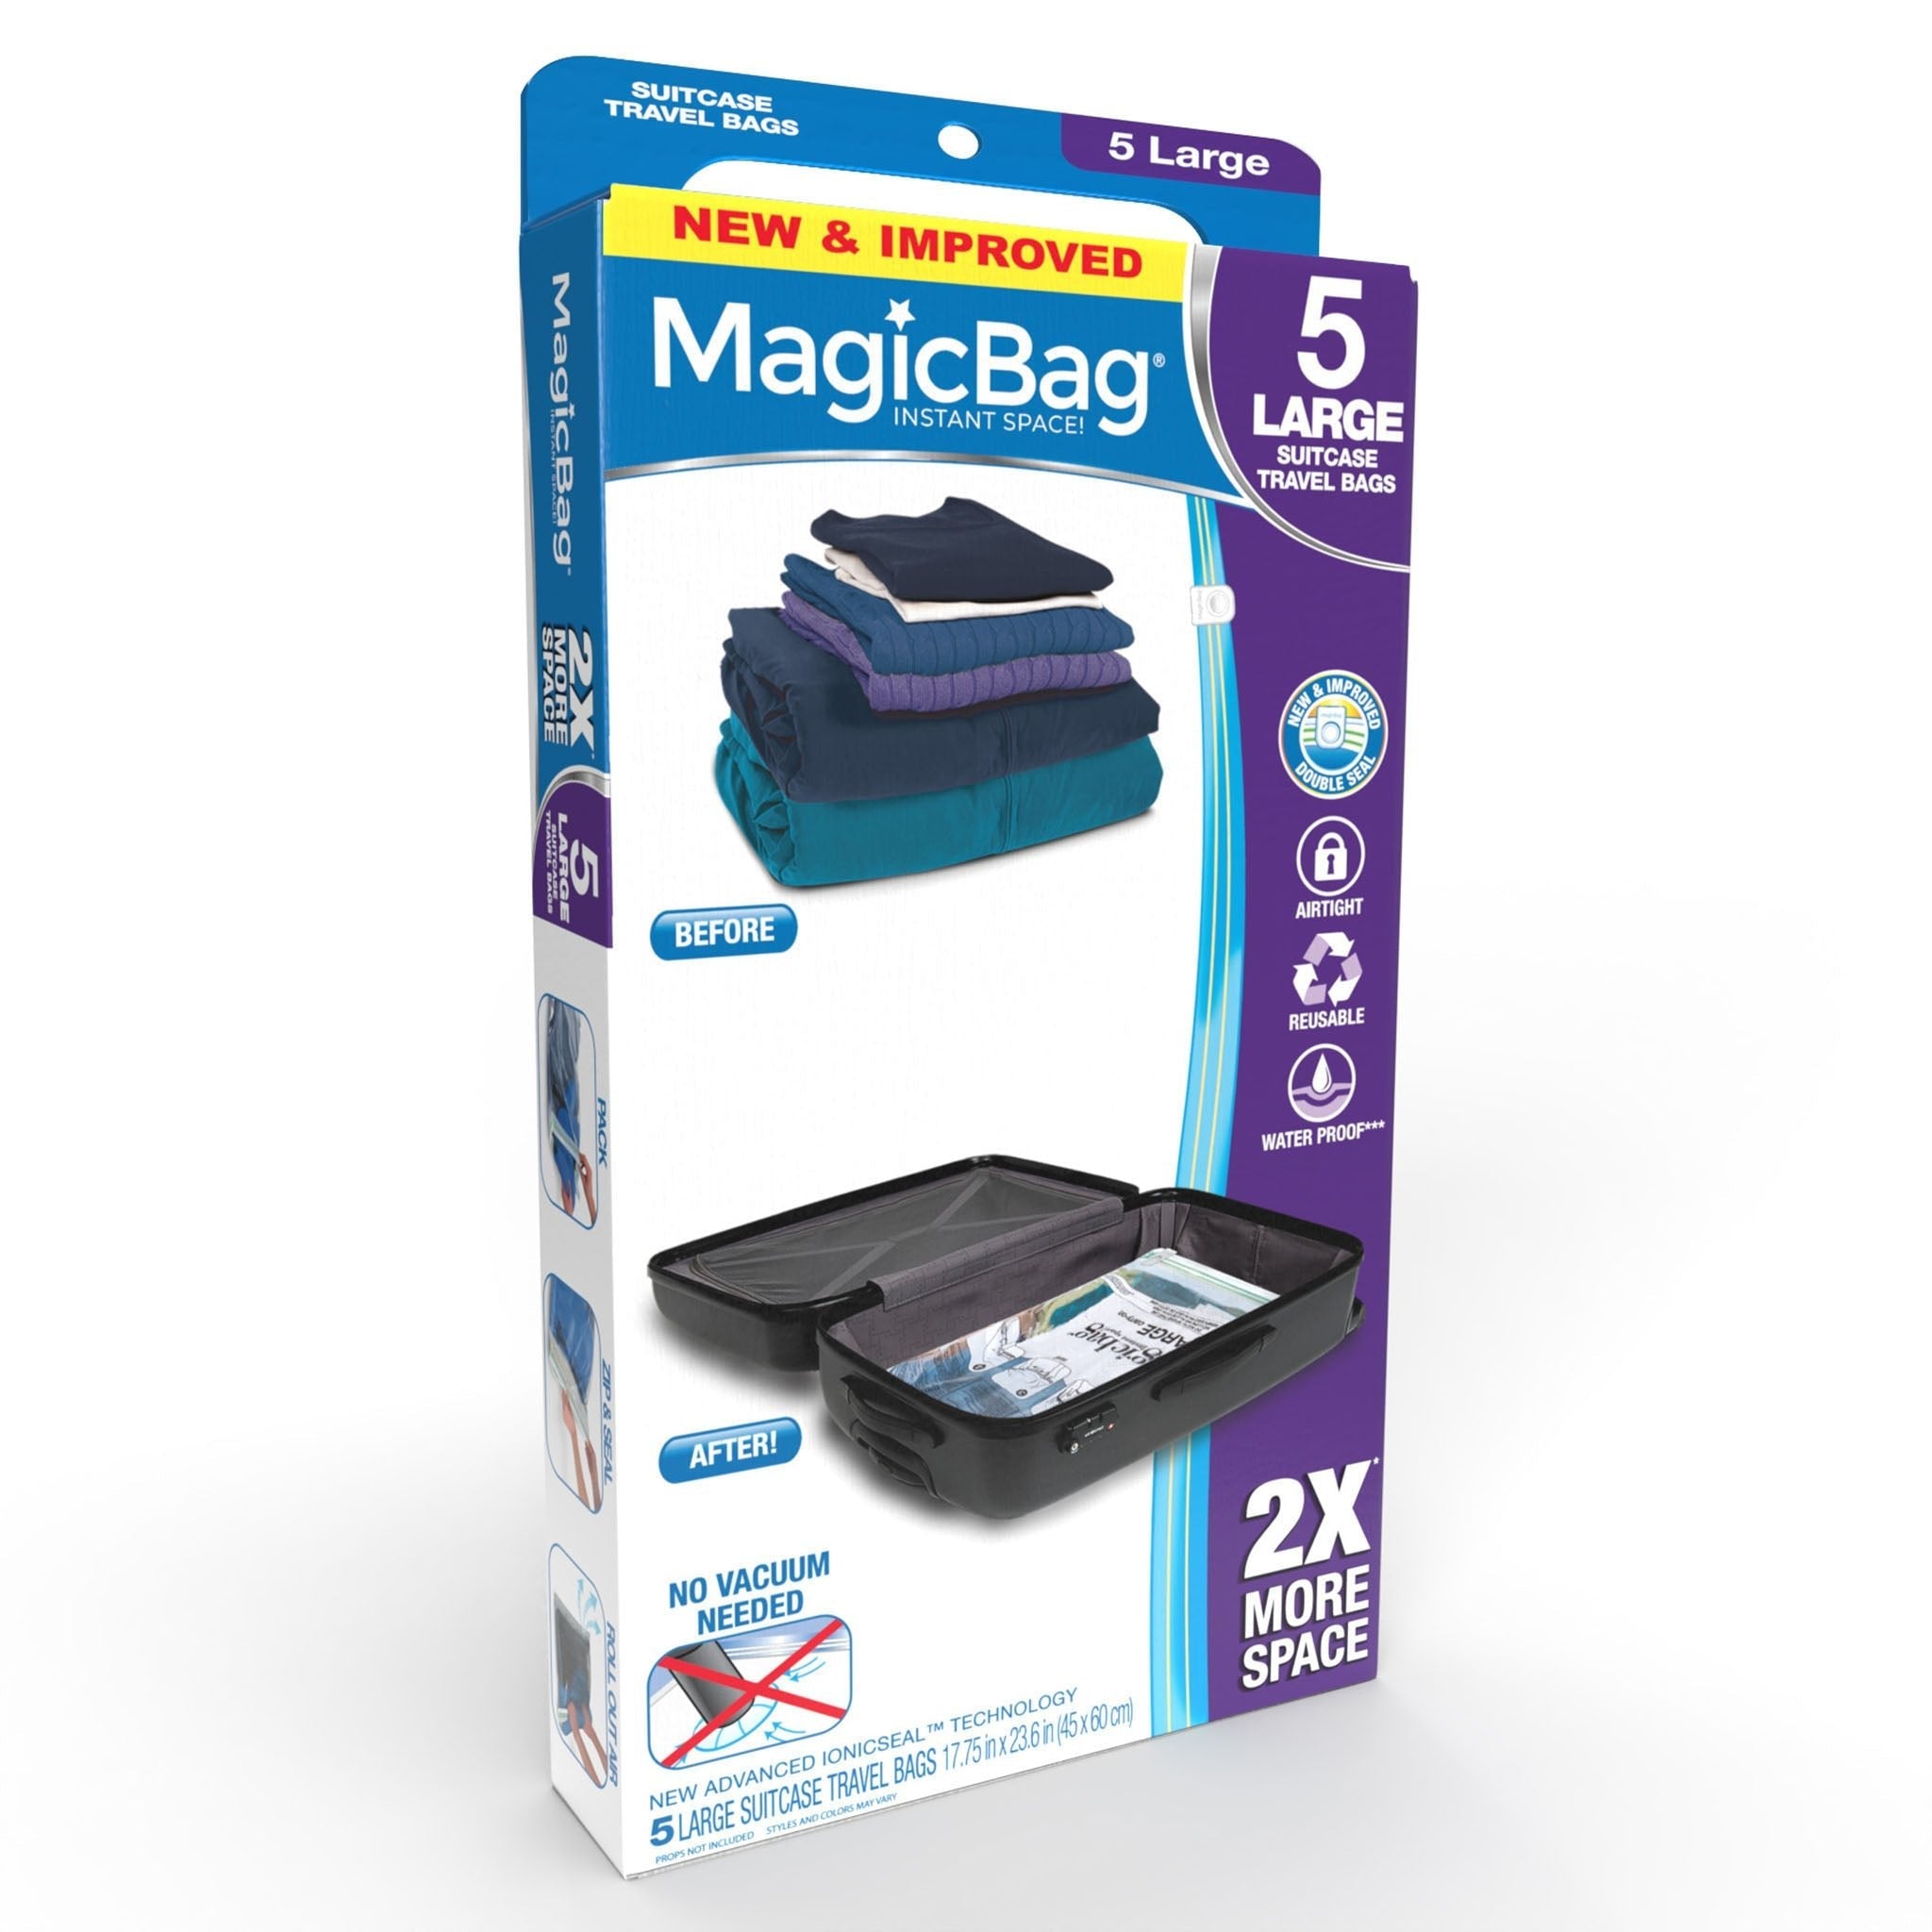 http://www.shopsmartdesign.com/cdn/shop/products/magicbag-instant-space-saver-storage-flat-suitcase-travel-smart-design-magicbag-5718412-200-incrementing-number-100412.jpg?v=1679340431